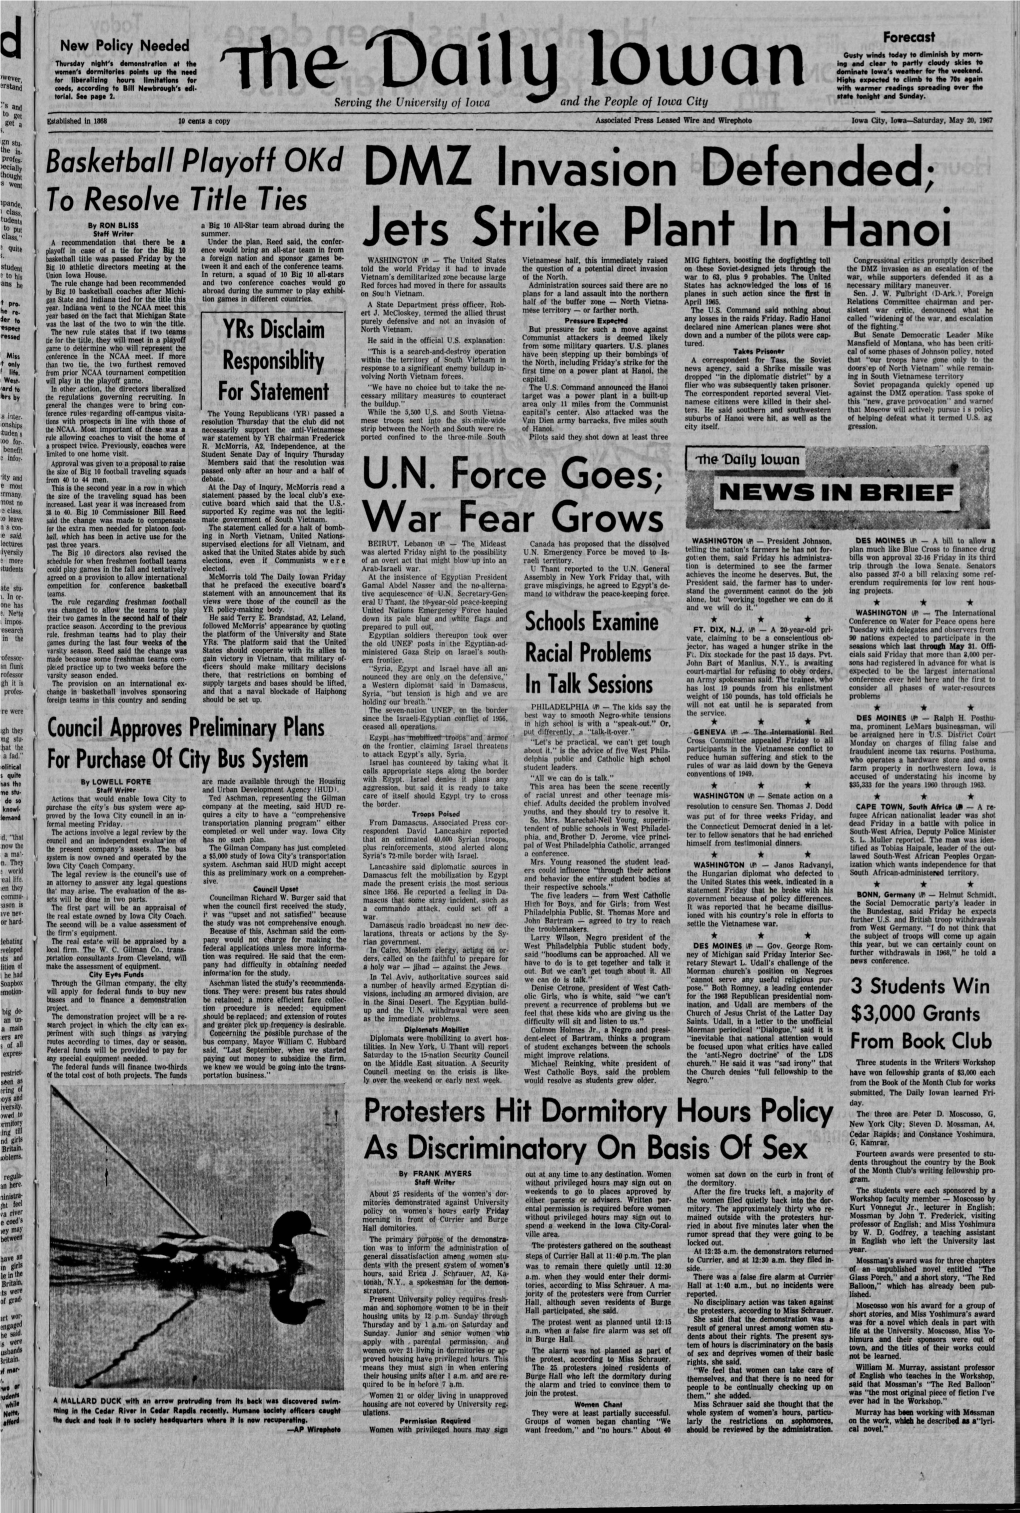 Daily Iowan (Iowa City, Iowa), 1967-05-20